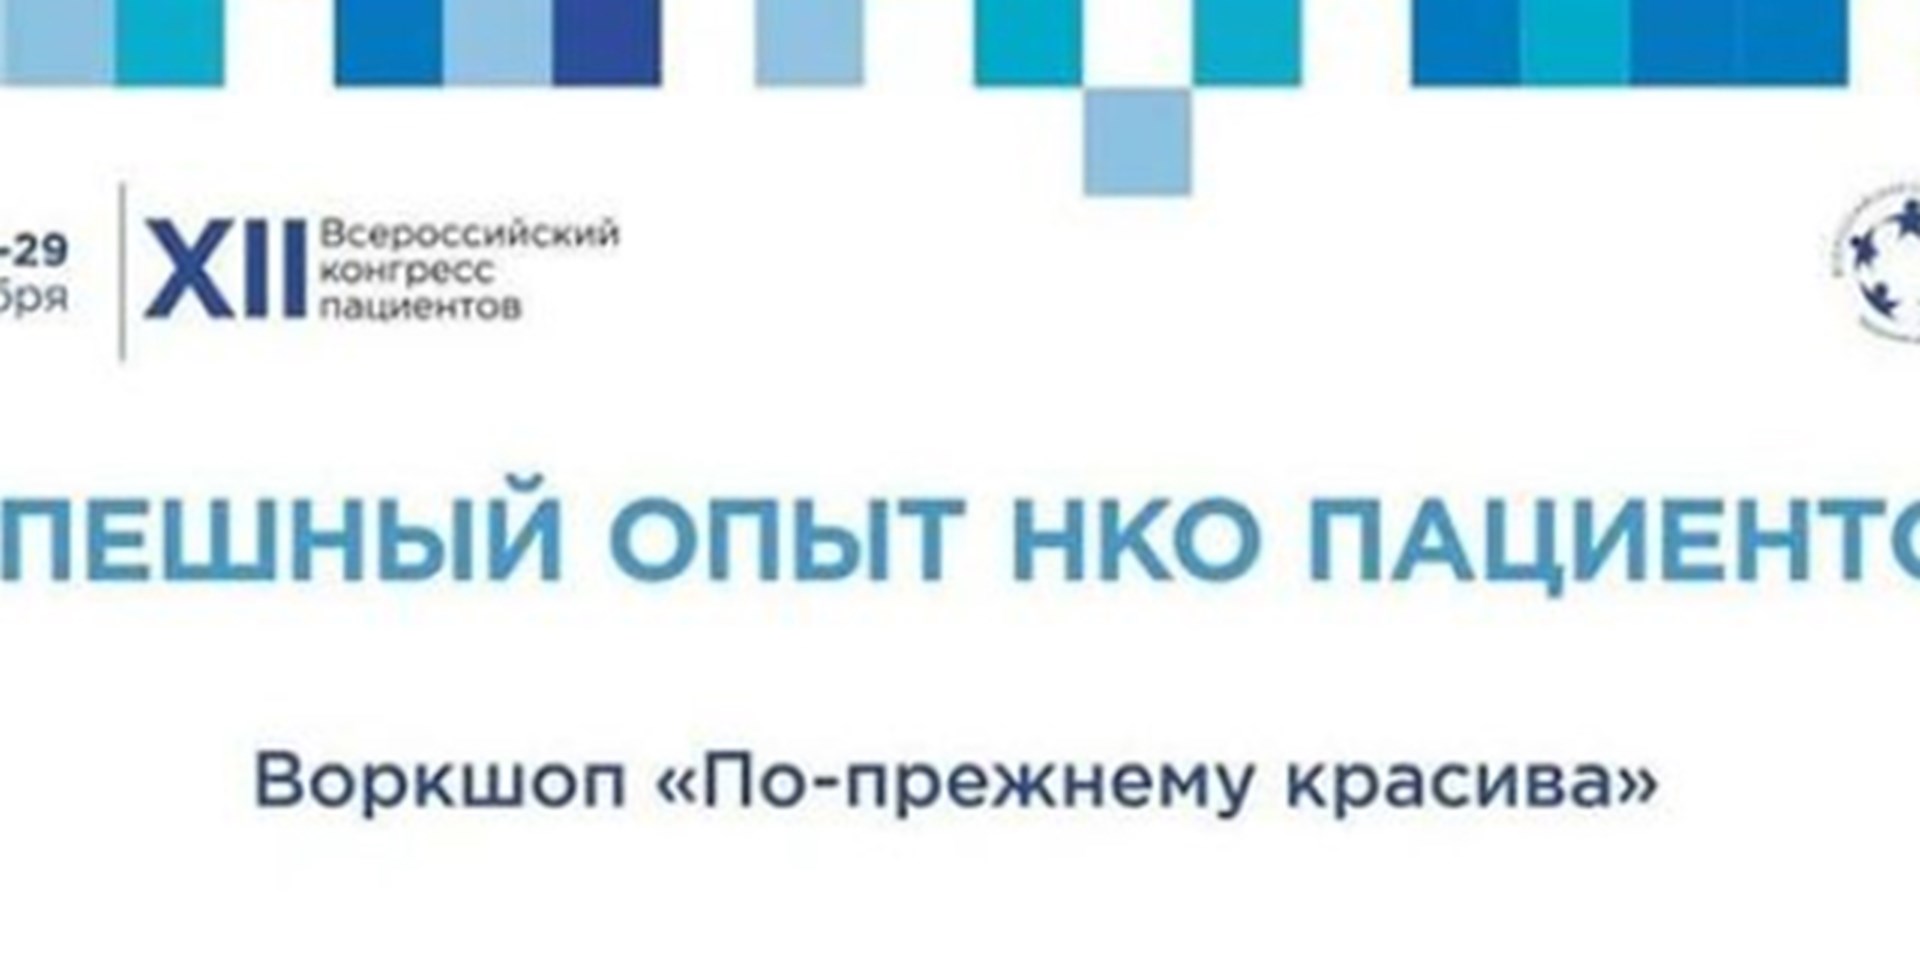 30.11.2021 Проектная инициатива "По-прежнему красива" на Всероссийском конгрессе пациентов.